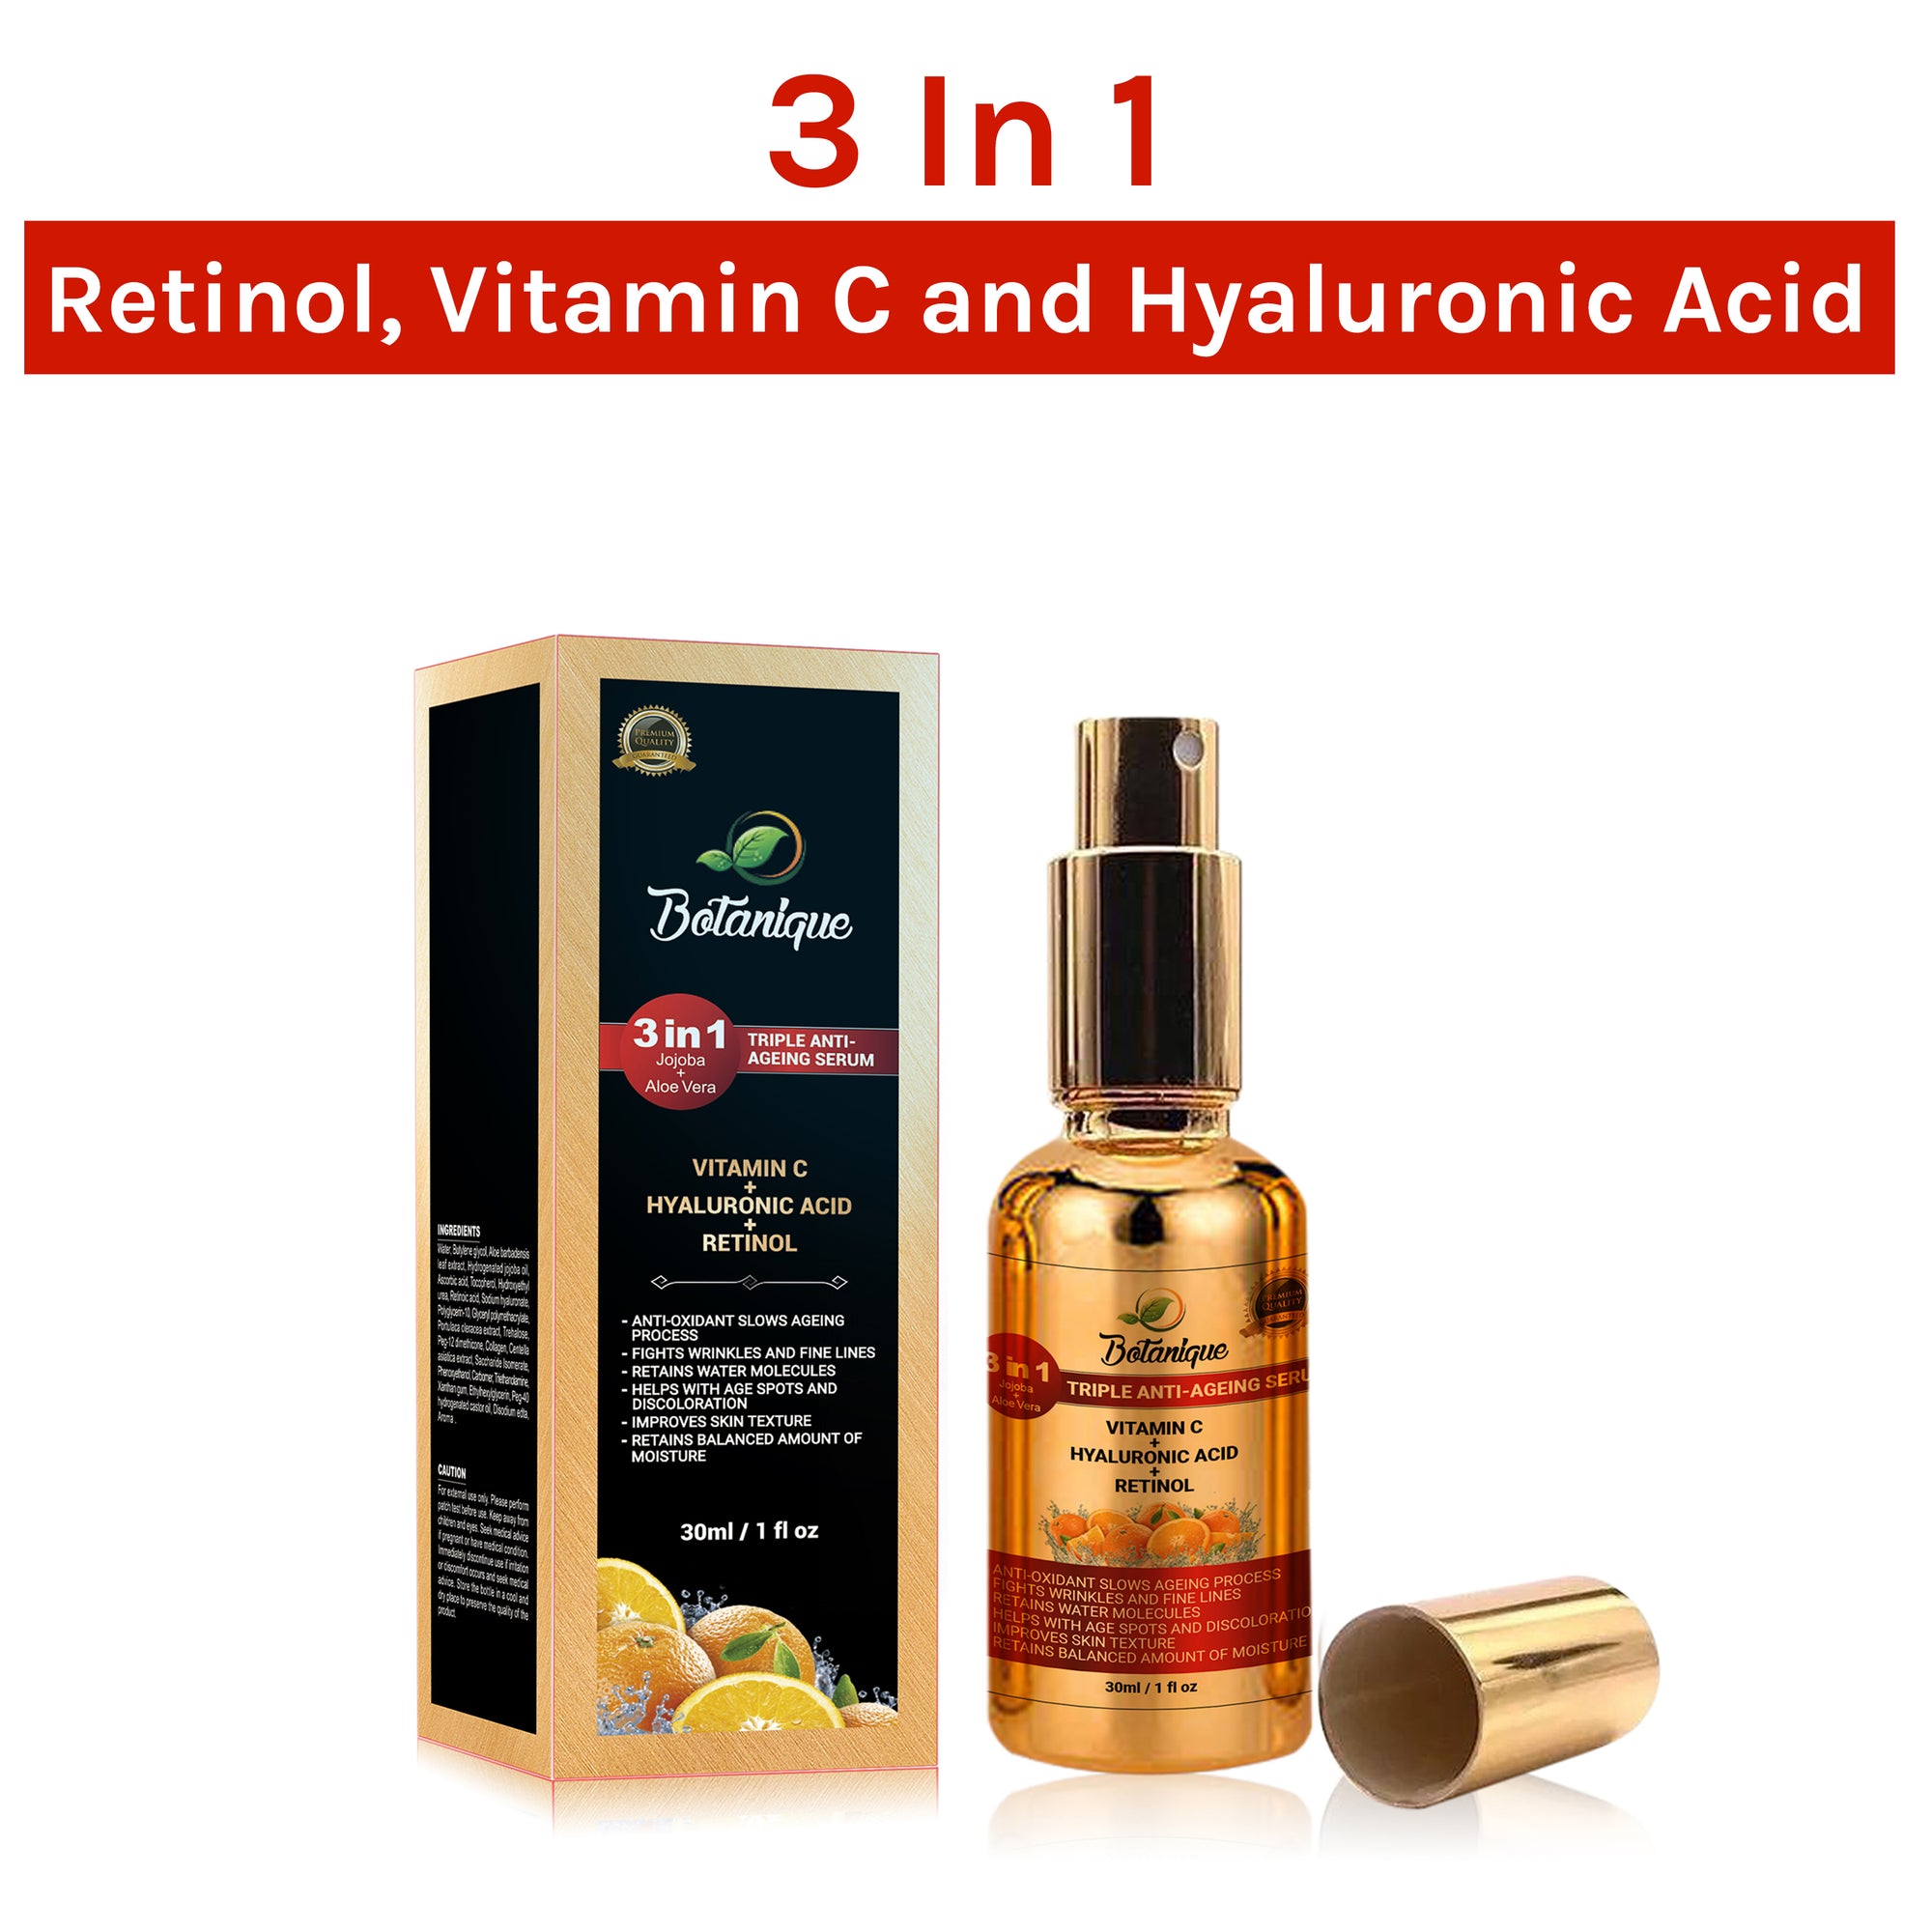 Trio Set Value ( Retinol, Vitamin C and Hyaluronic Acid )